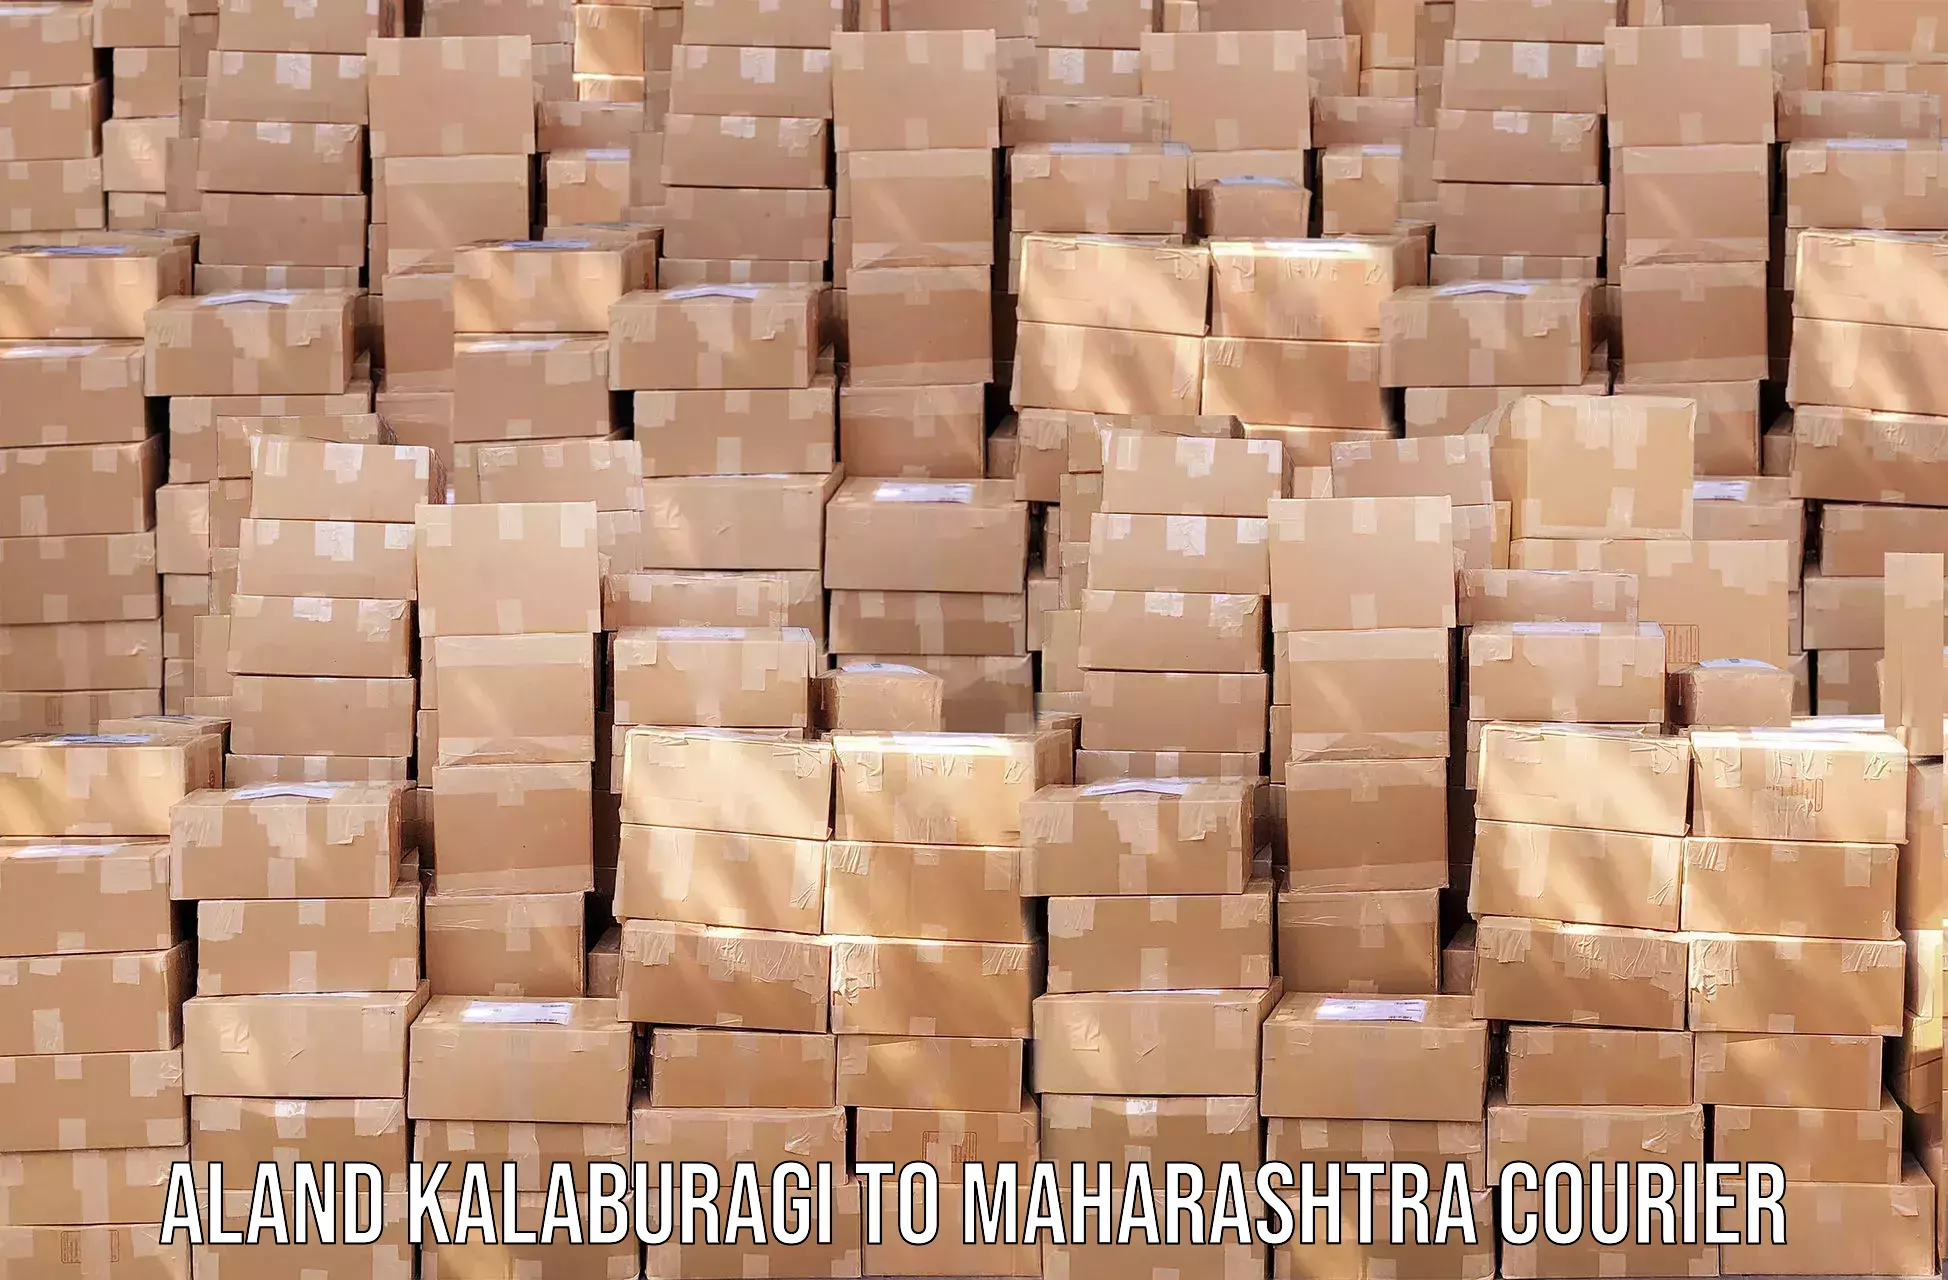 Express logistics providers Aland Kalaburagi to Kalyan